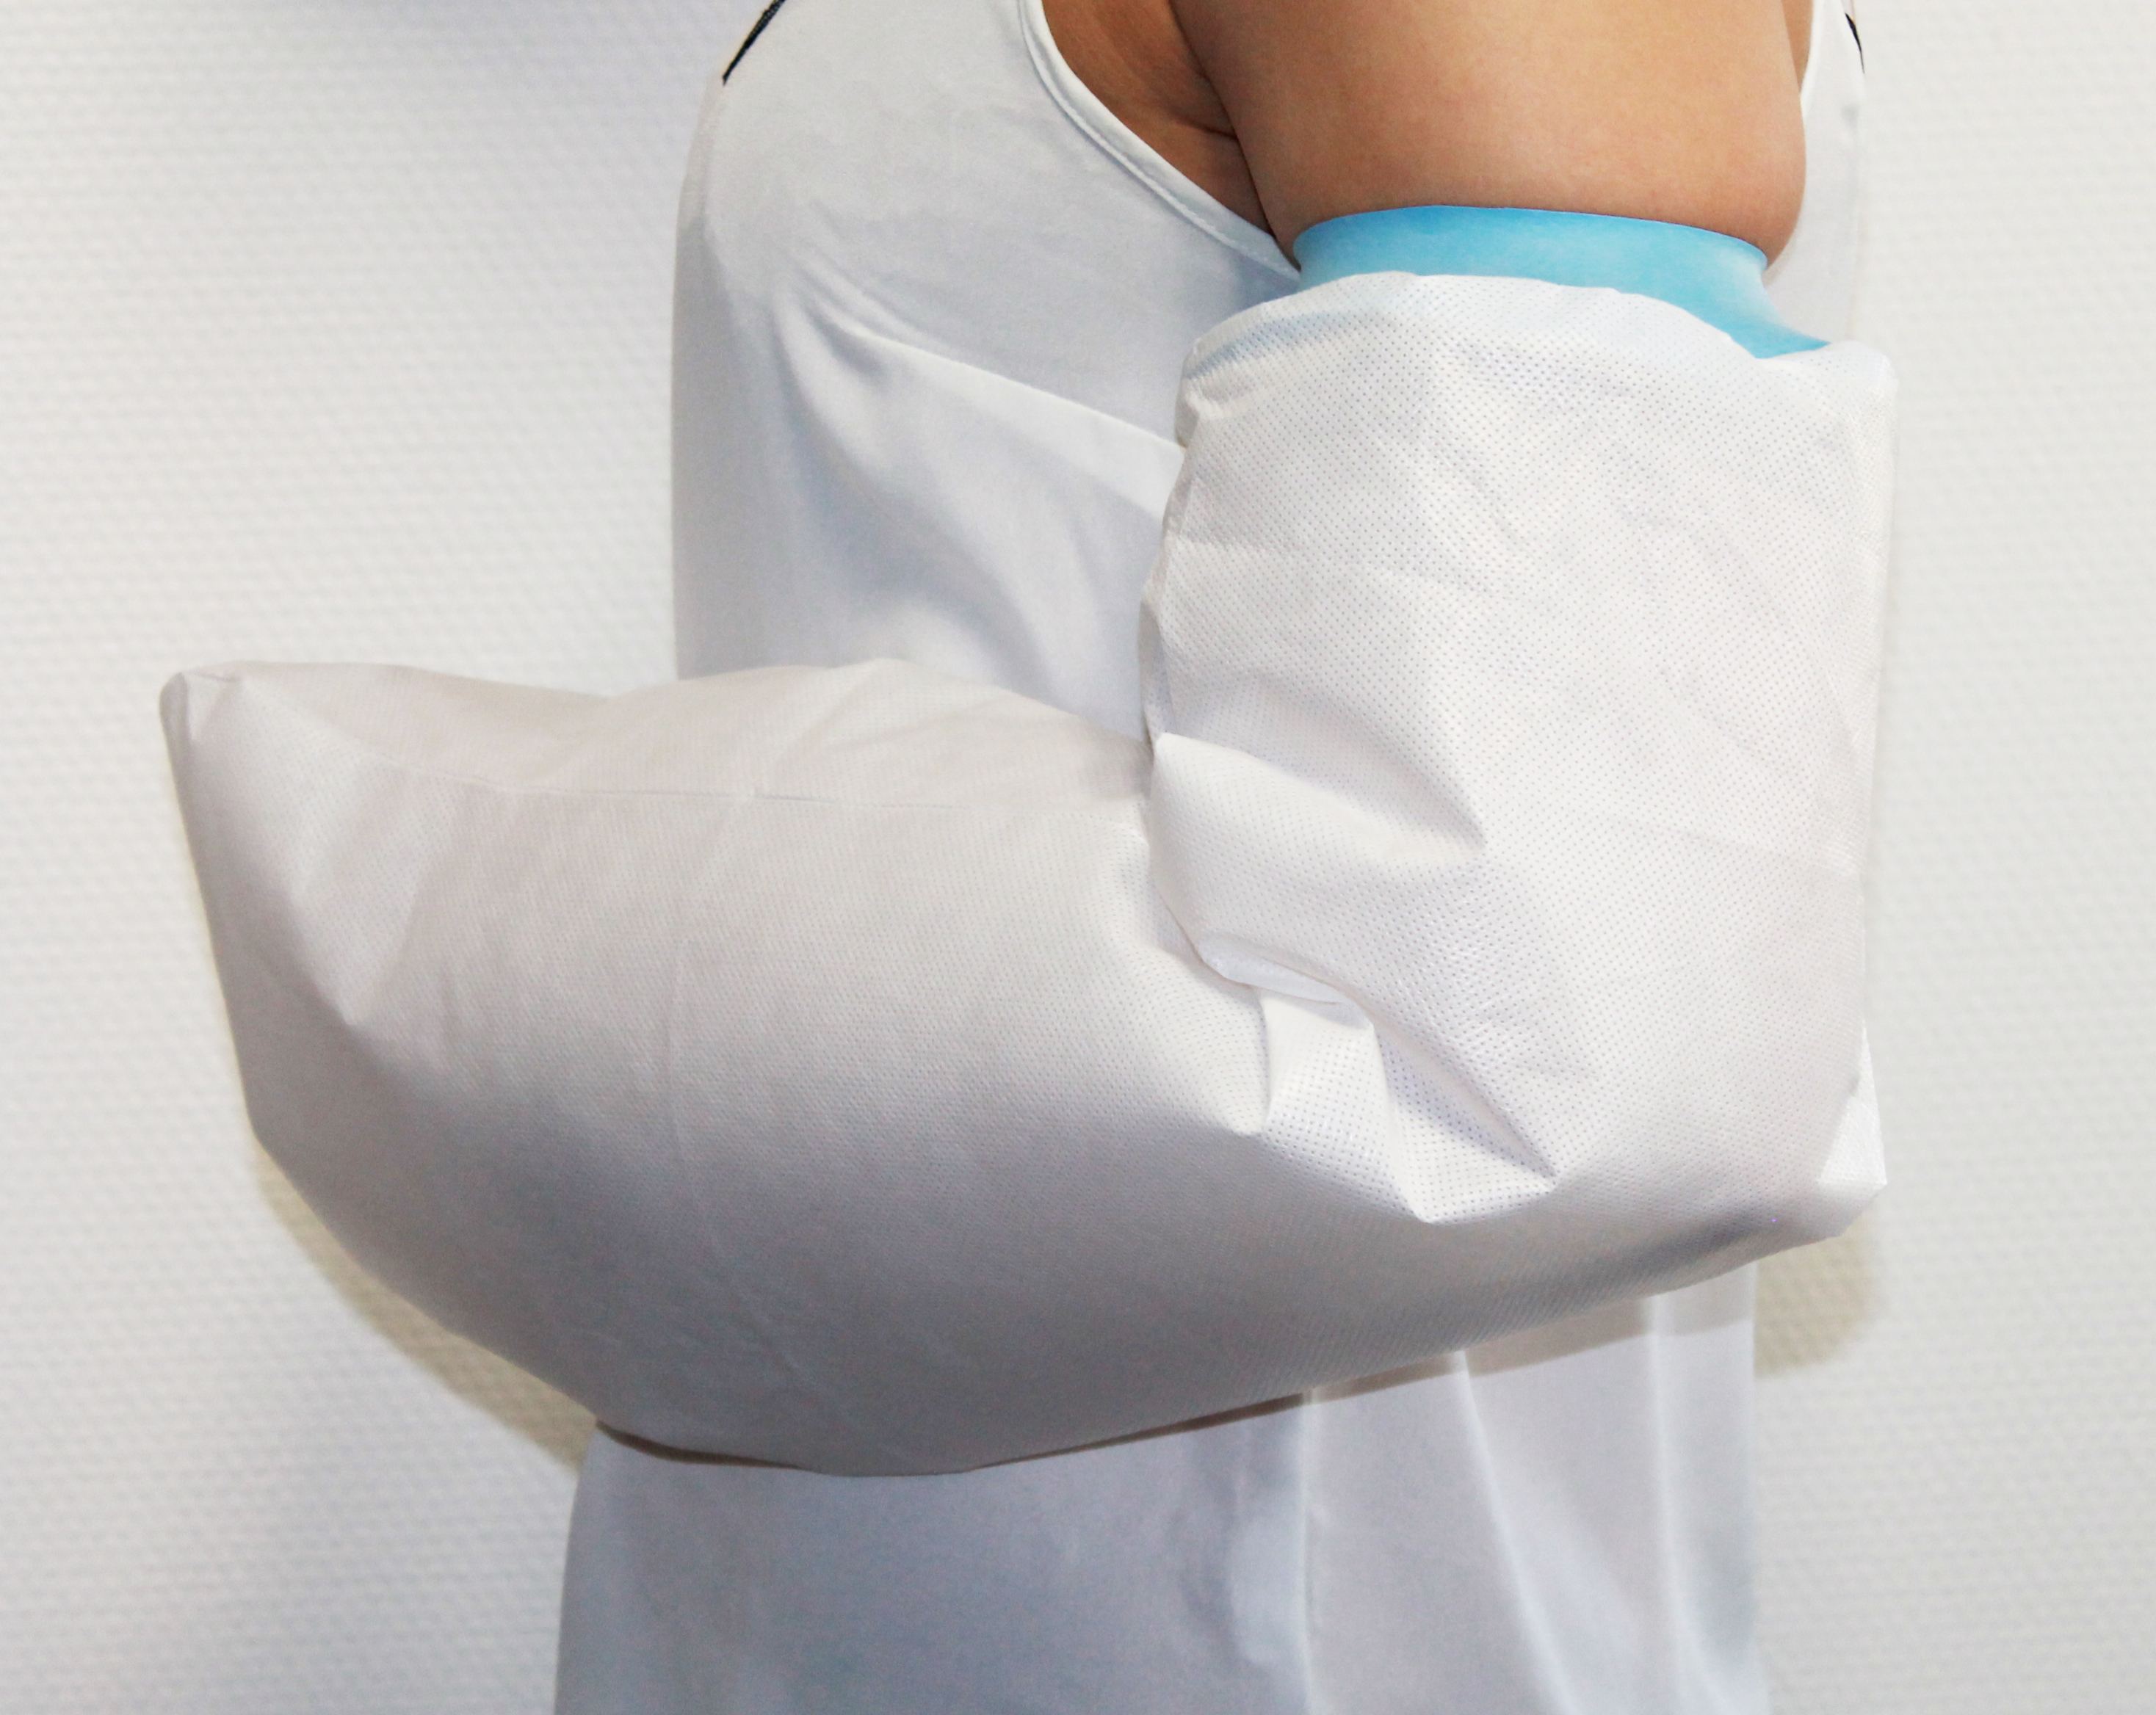 Protège Plâtre housse hydroprotect poignet avant-bras enfant